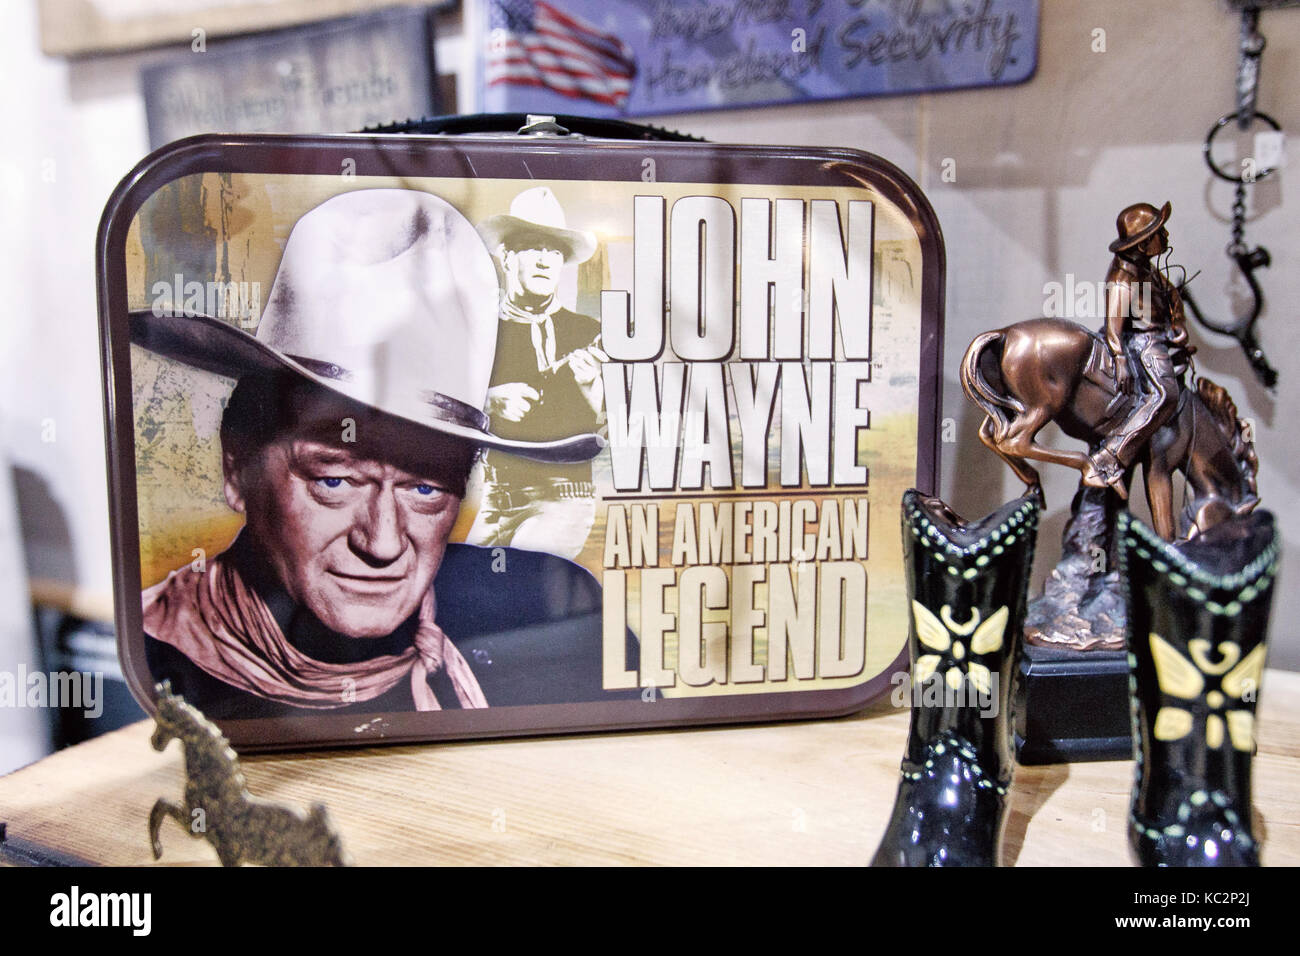 John Wayne à son effigie est affiché sur les étagères d'un magasin à Manhattan. Banque D'Images